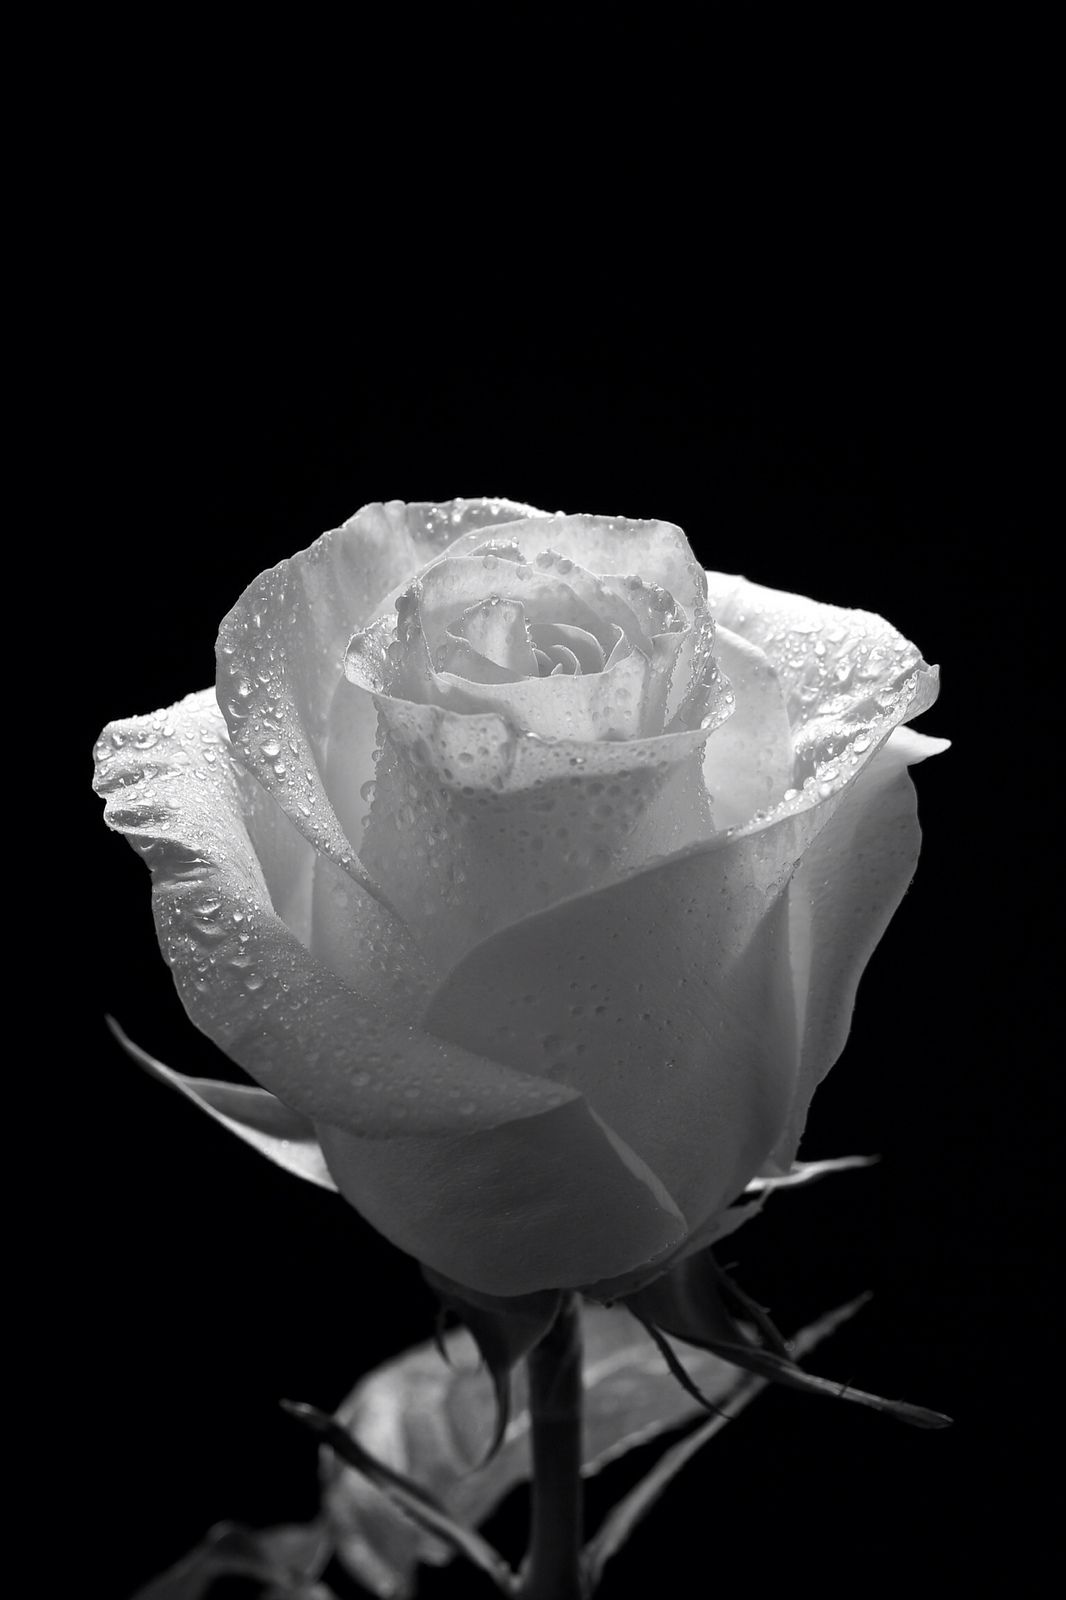 Wet Rose. White roses wallpaper, Black and white painting, Black